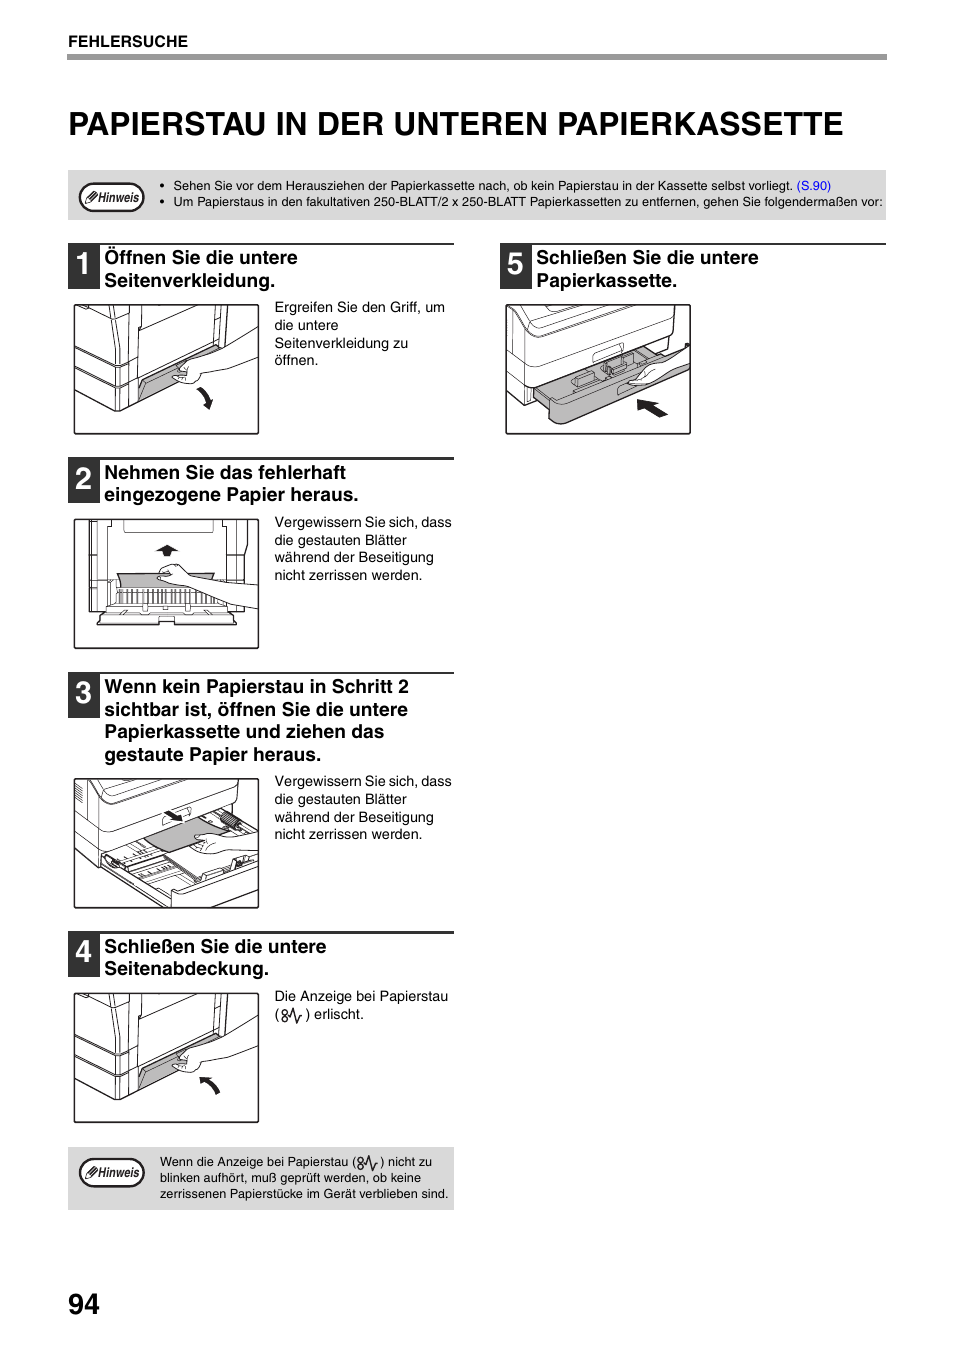 Papierstau in der unteren papierkassette, Papierstau in der unteren, Papierkassette | S.94) | Sharp AR-5618 Benutzerhandbuch | Seite 96 / 108